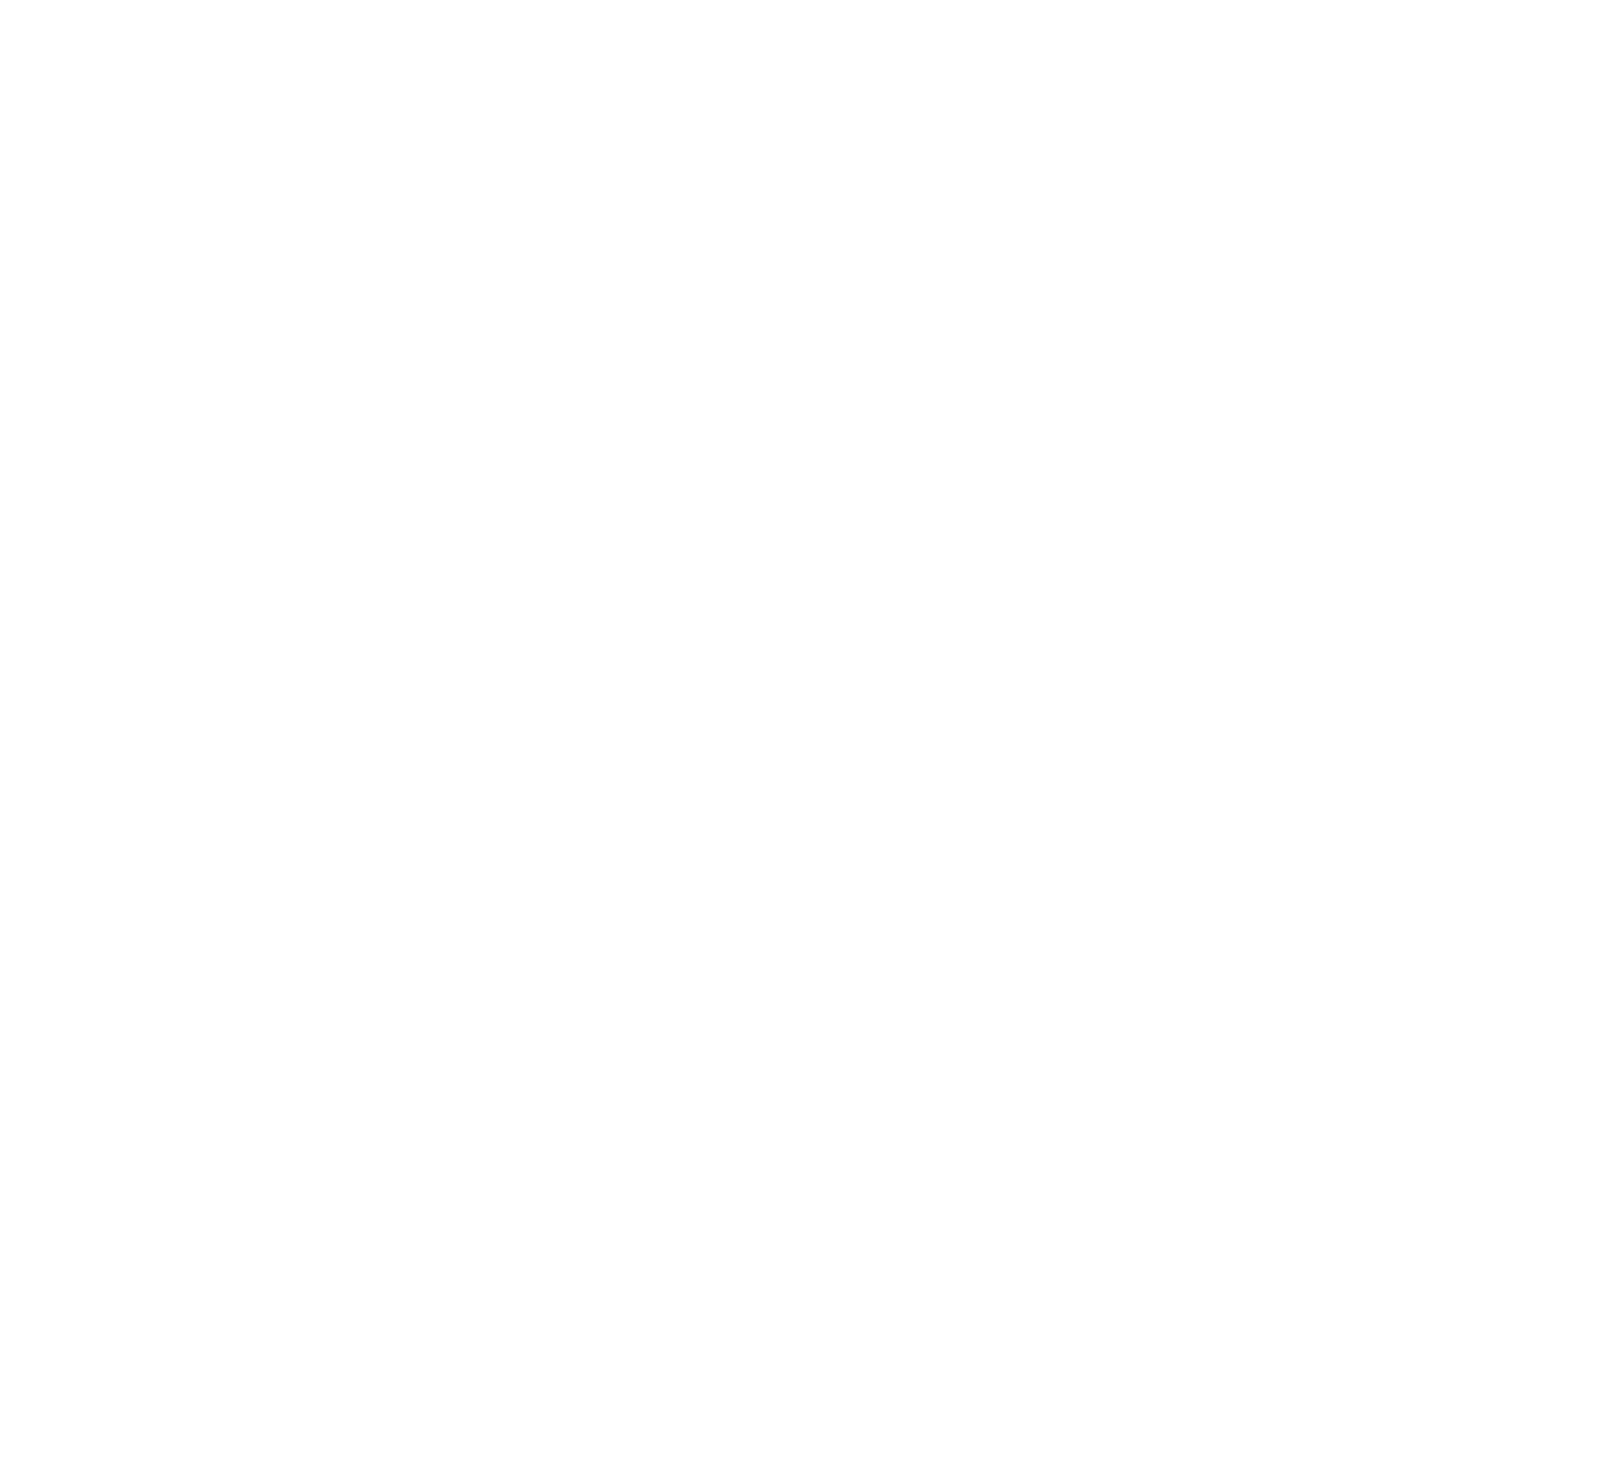 Ubisoft logo large for dark backgrounds (transparent PNG)